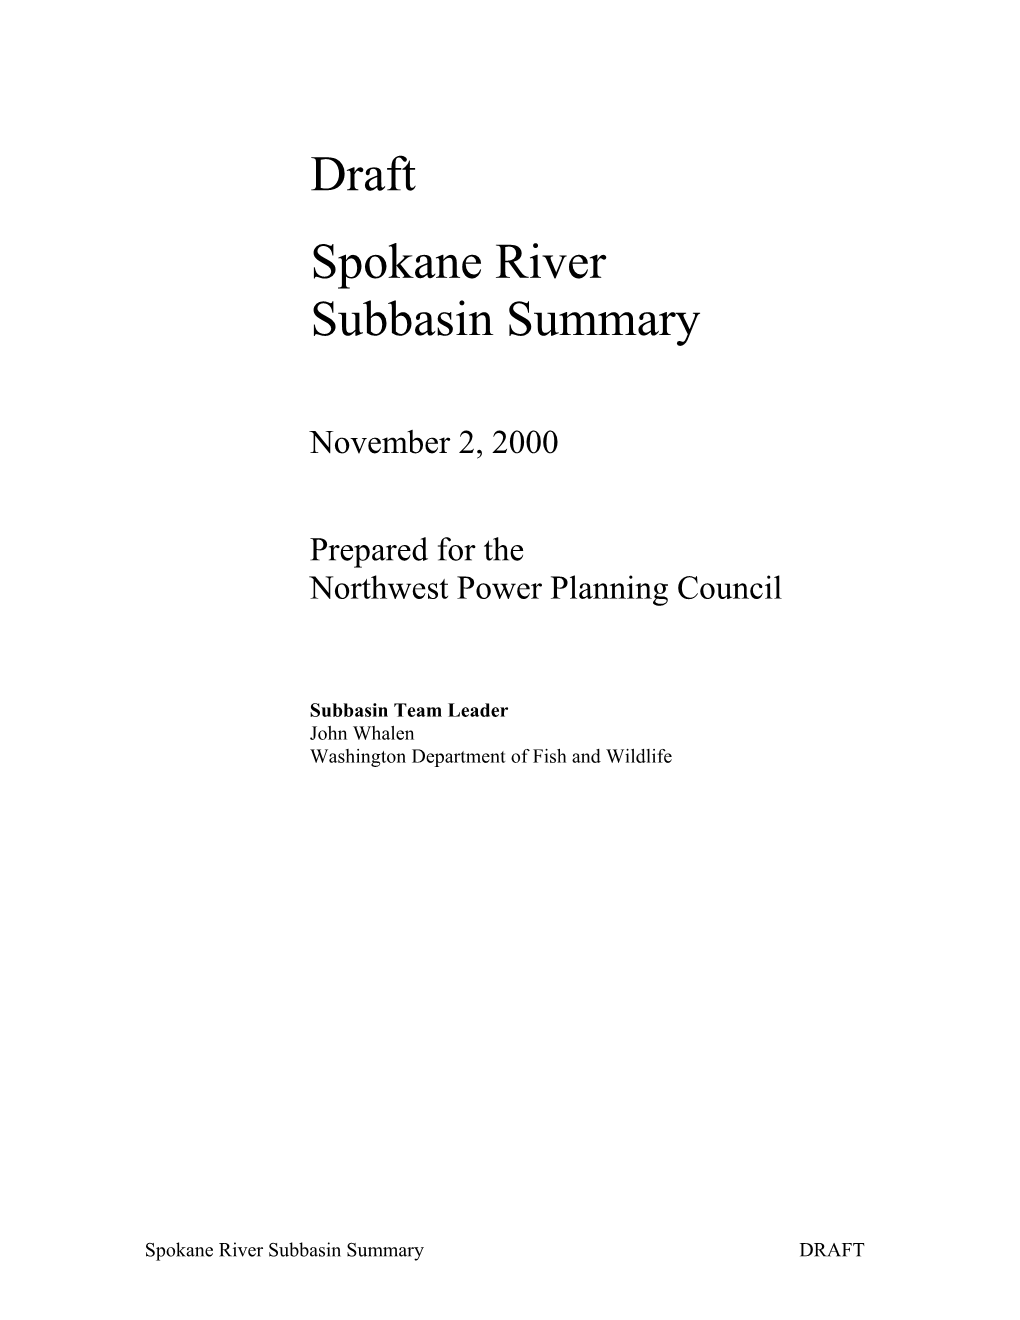 Spokane River Subbasin Summary